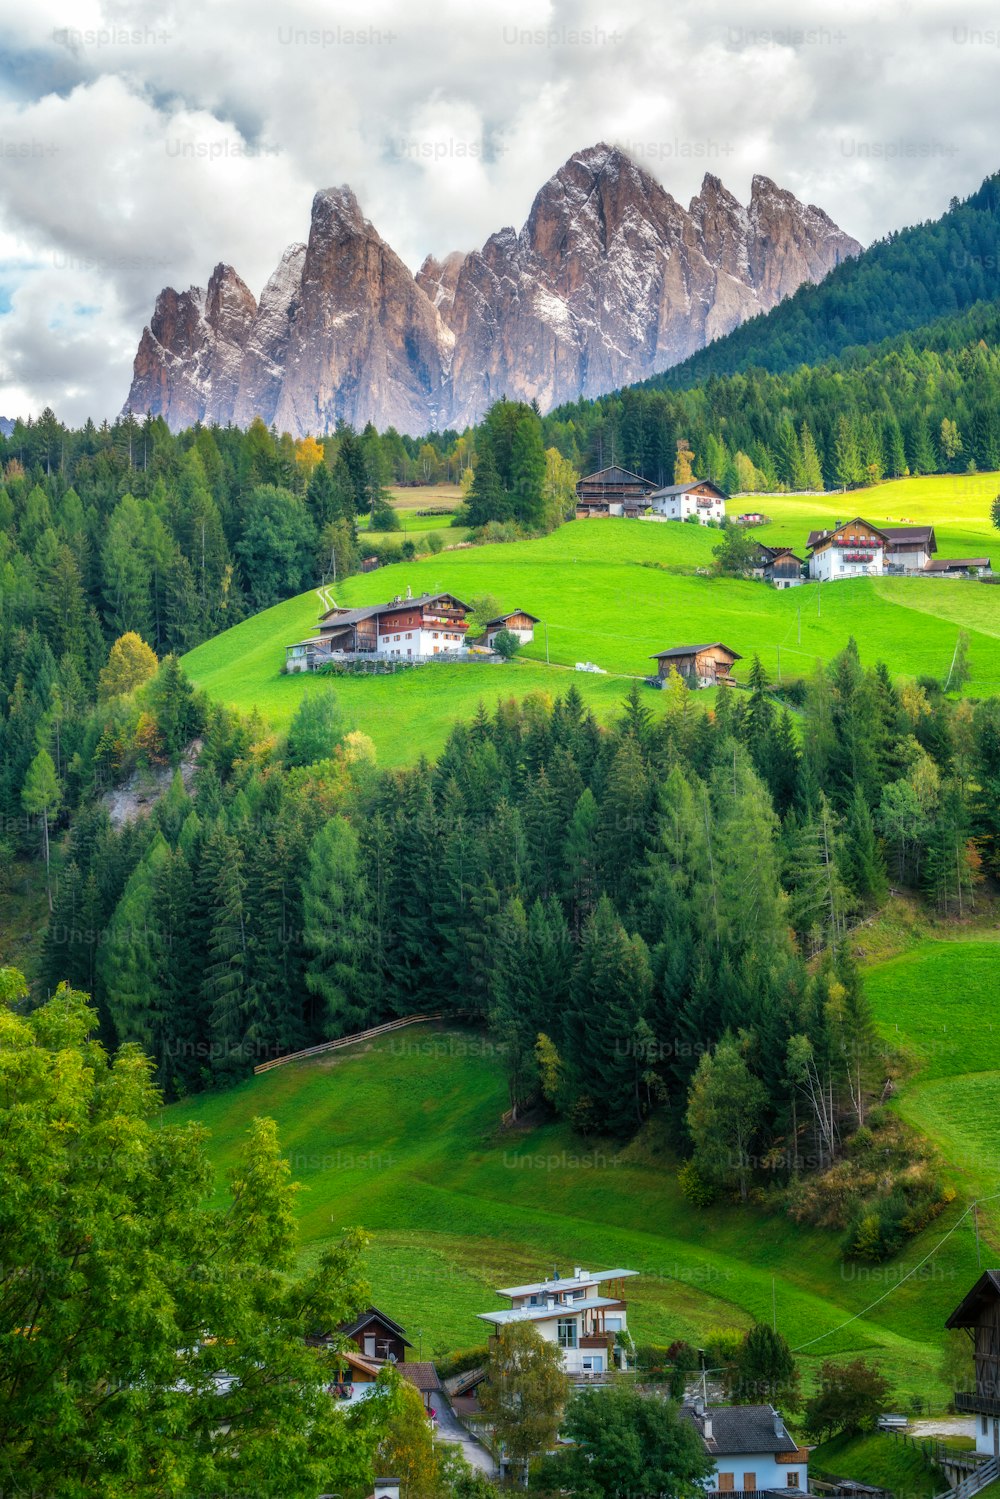 Villaggio di montagna in Val di Funes con scenario del Gruppo delle Odle nel Parco Naturale Puez-Odle, le Dolomiti nord-occidentali, Alto Adige, Italia settentrionale.